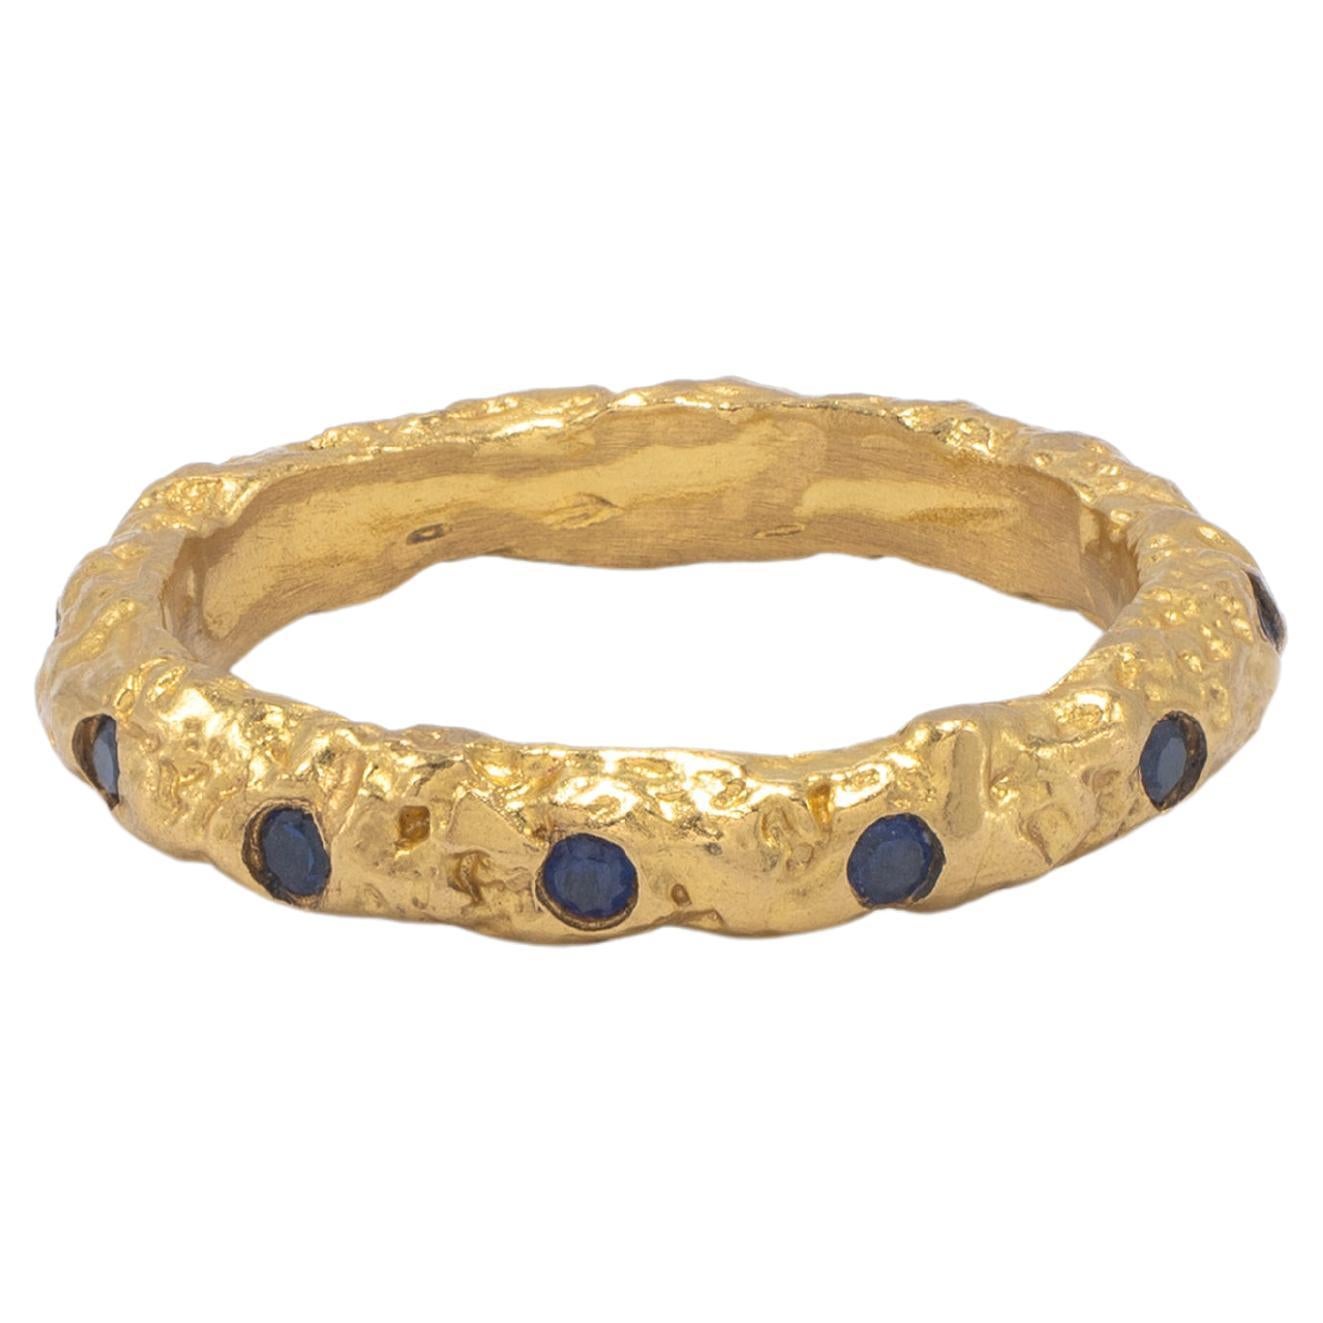 Bagues empilables épaisses en or 22 carats avec saphirs bleus, par Tagili